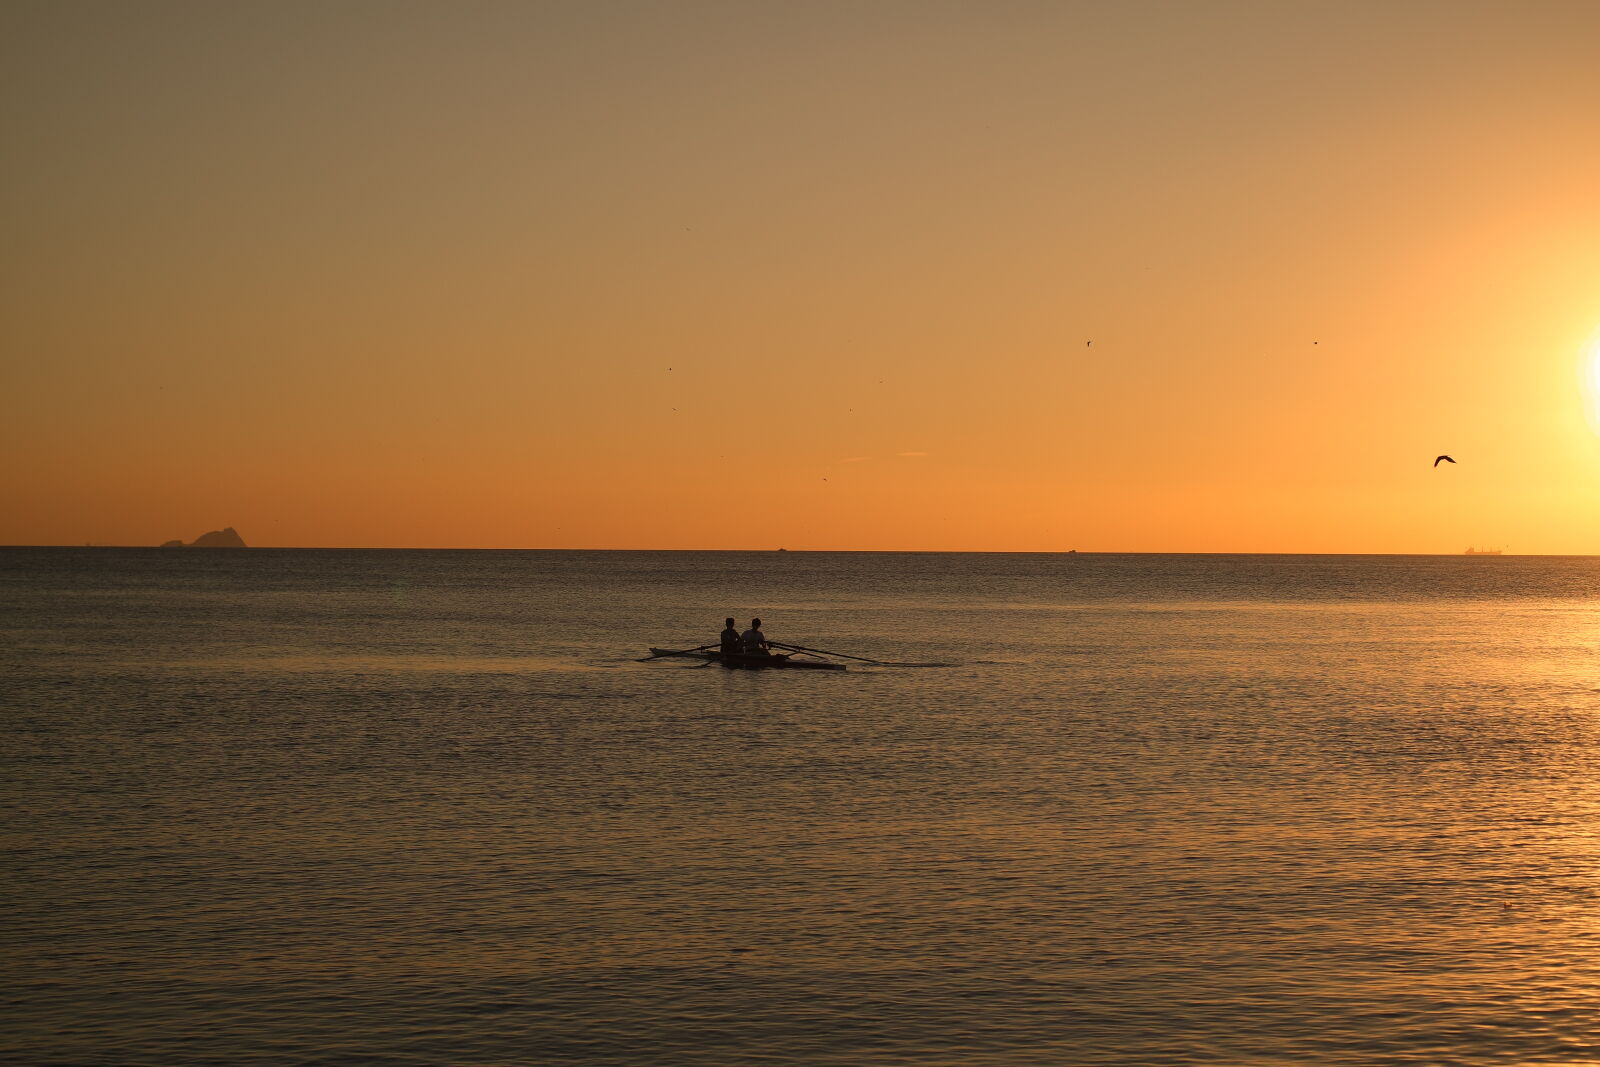 Samsung NX 45mm F1.8 sample photo. Sea, sunset, sun, boat photography